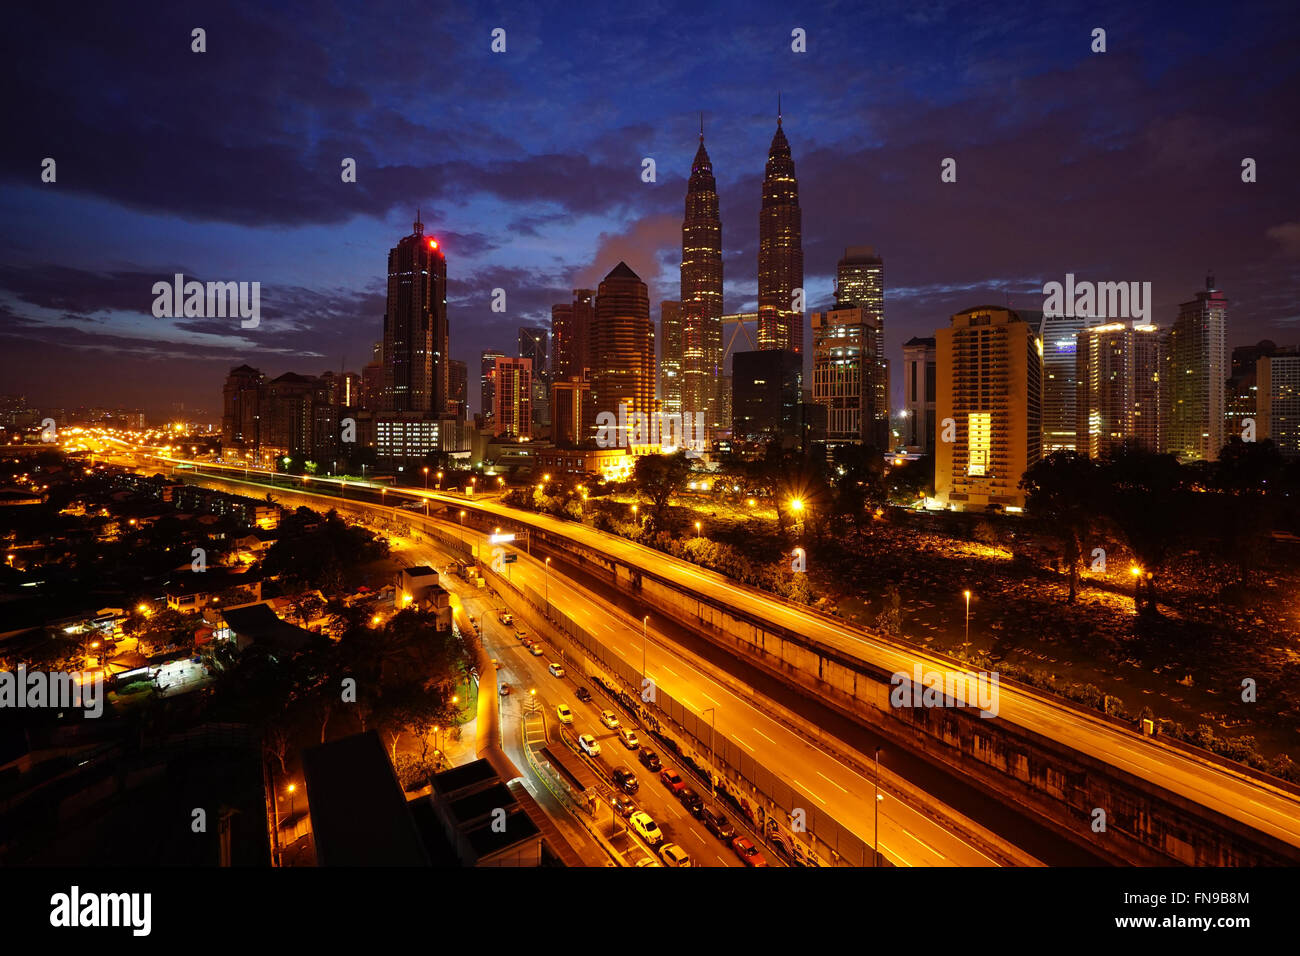 City skyline at night, Kuala Lumpur, Malaysia Stock Photo